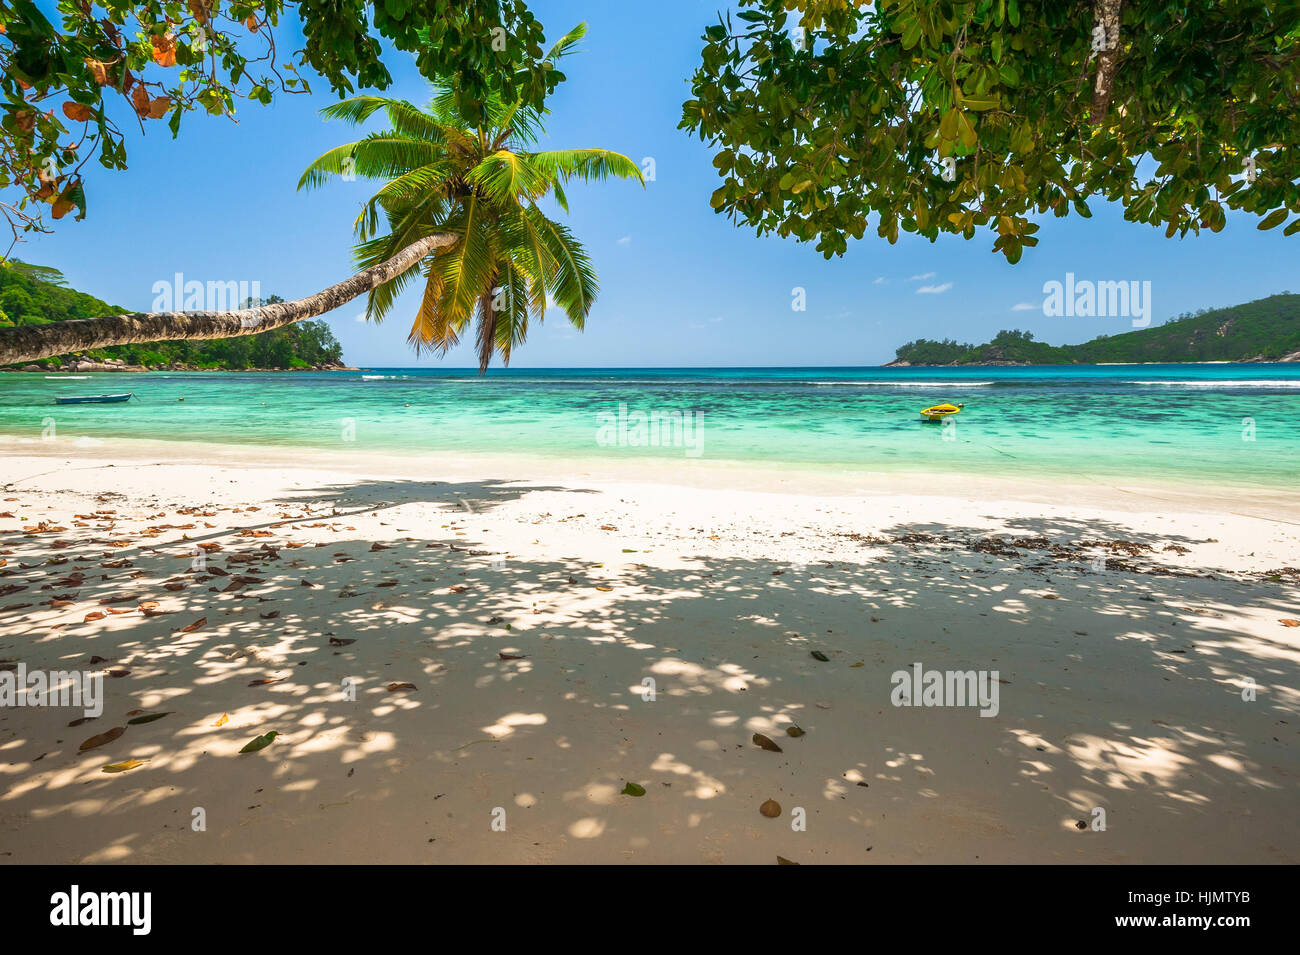 Beach of the Seychelles, Island Mahé, Bay Baie Lazare Stock Photo